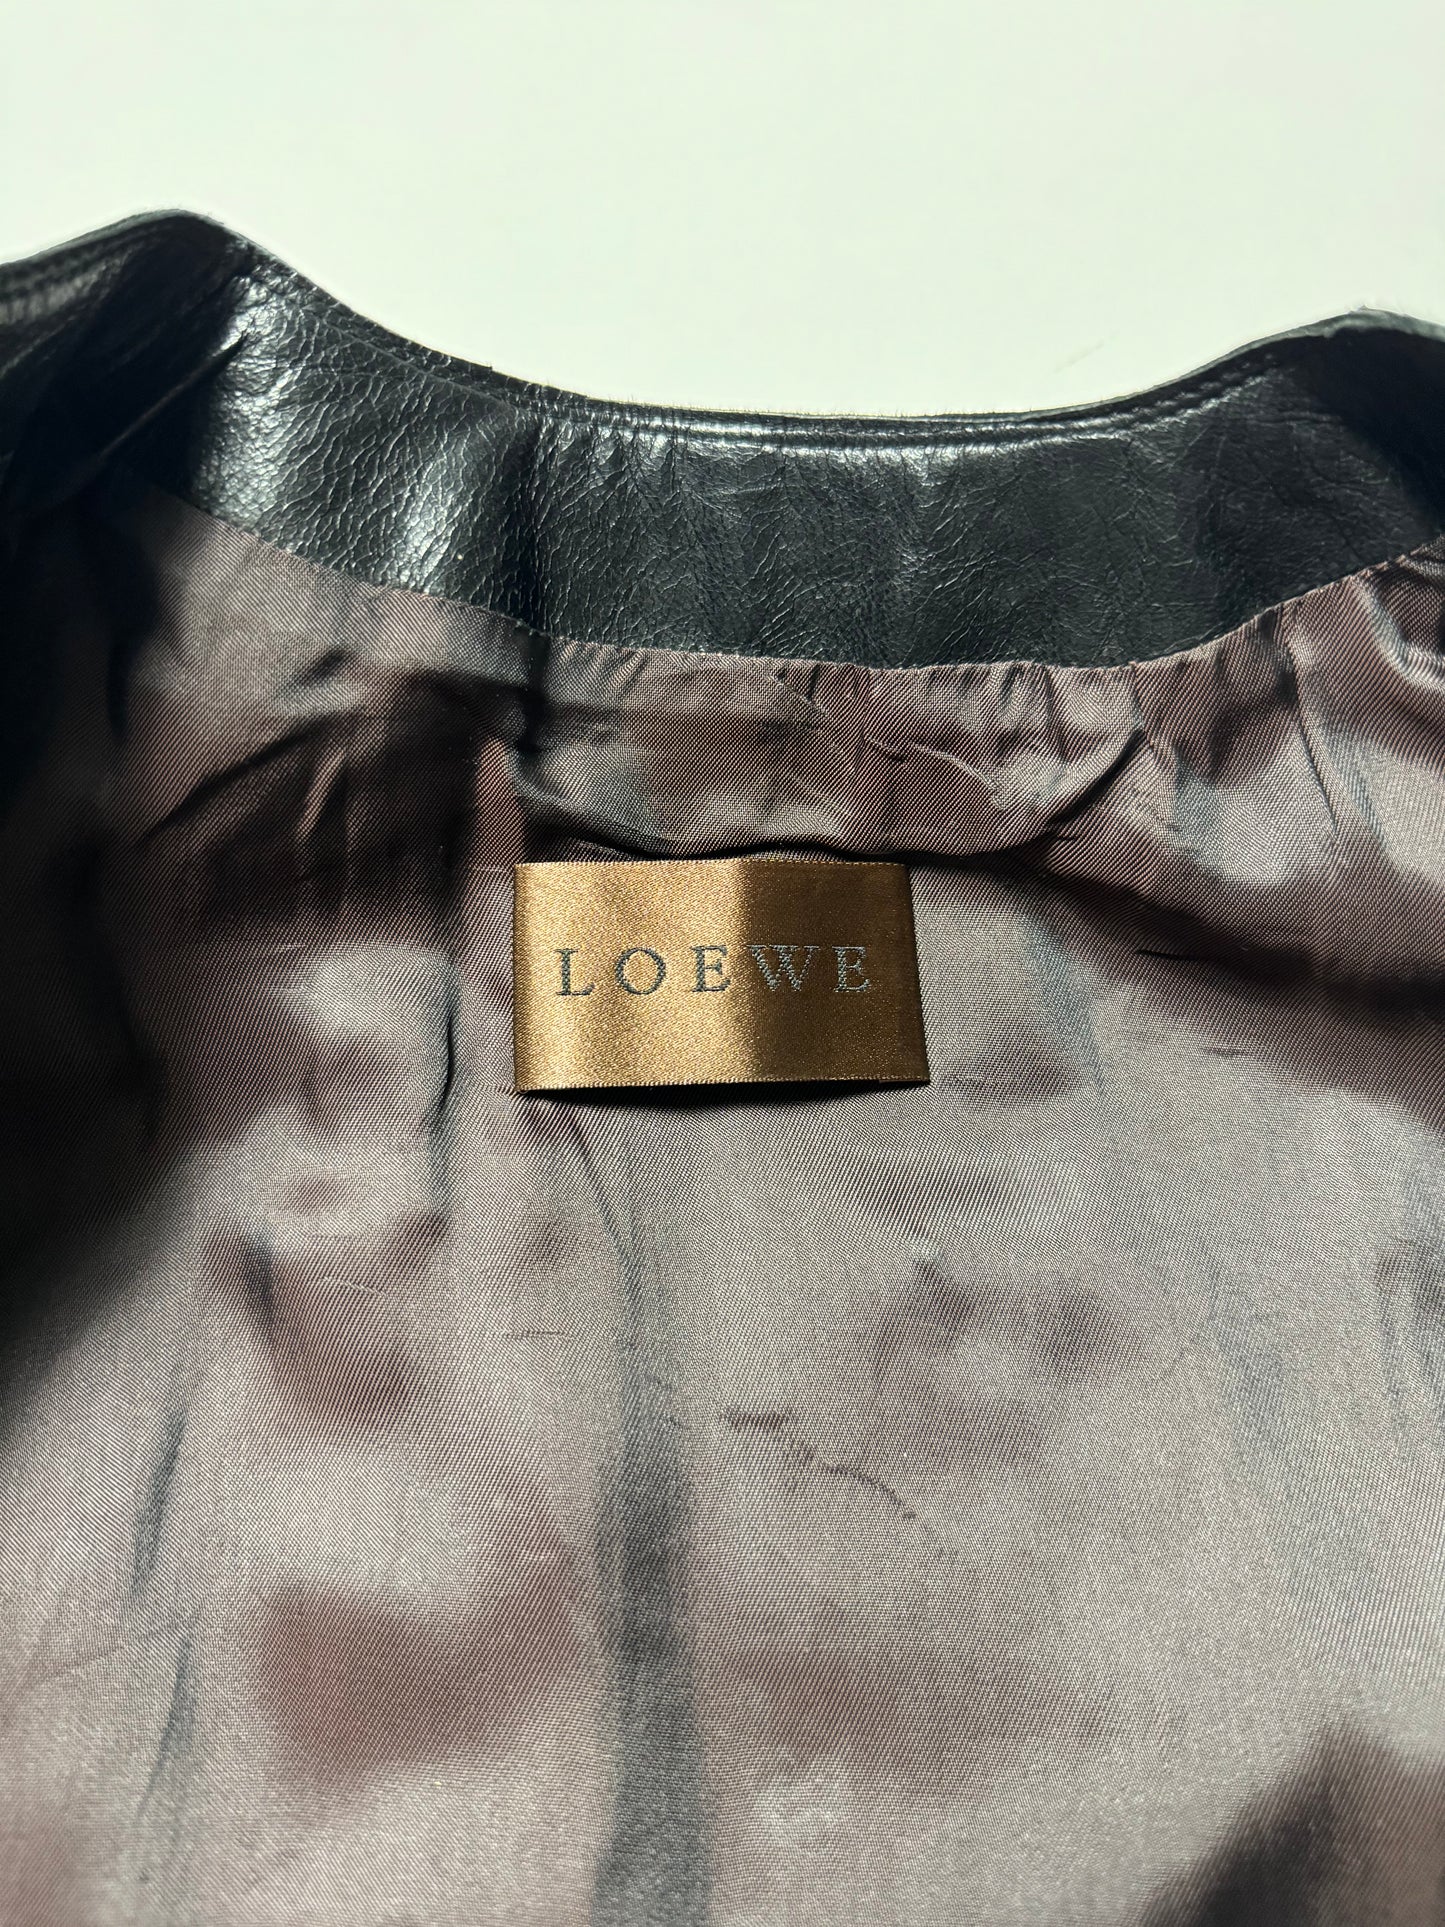 Loewe Leather Cinched Jacket